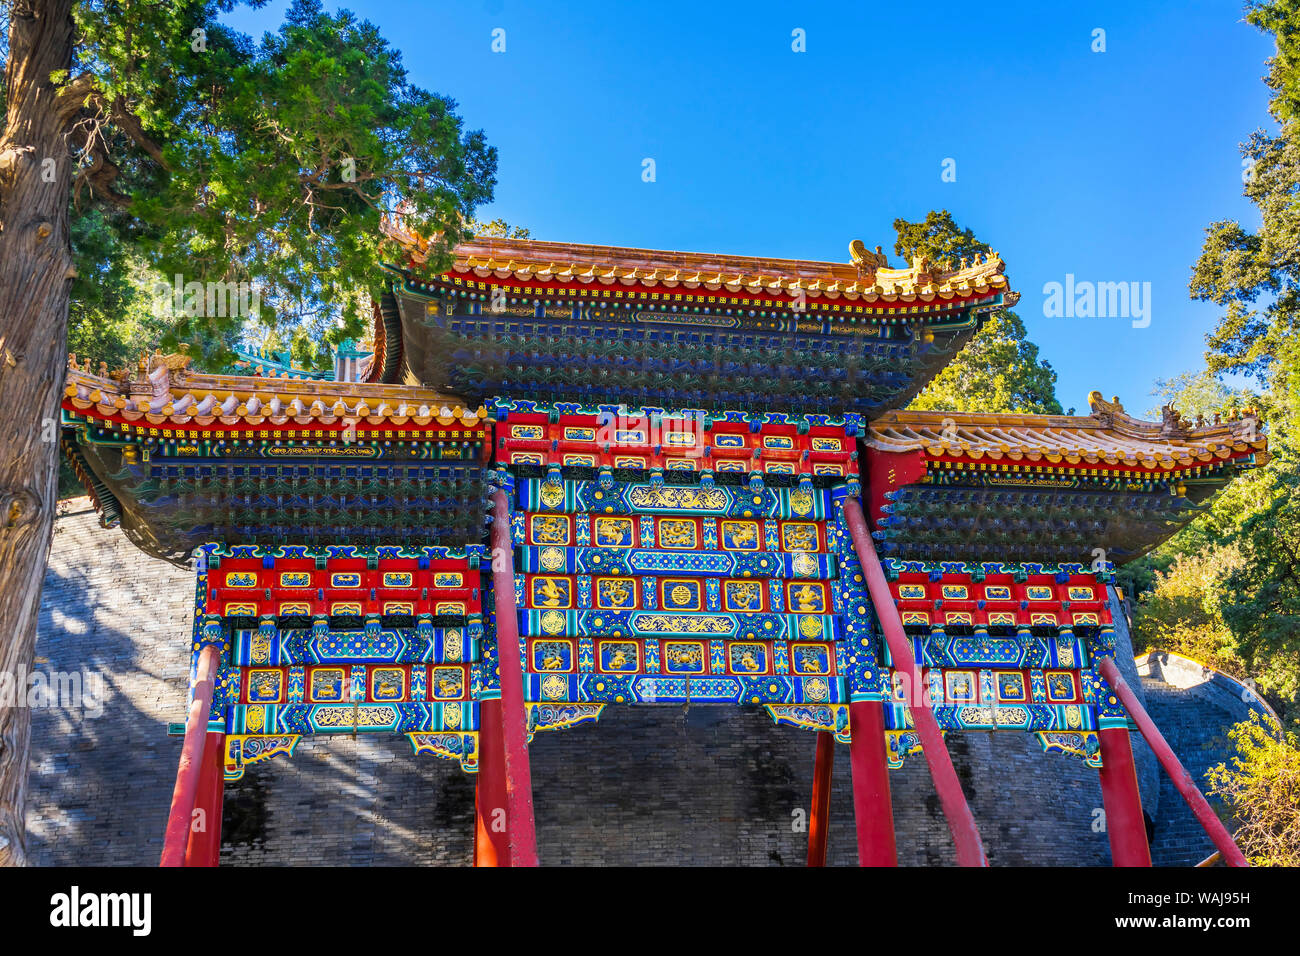 Reich verzierte Red Blue Gate Jade Blumeninsel Beihai Park, Peking, China. Beihai in 1000 AD, Stupa in 1600's erstellt. Stockfoto